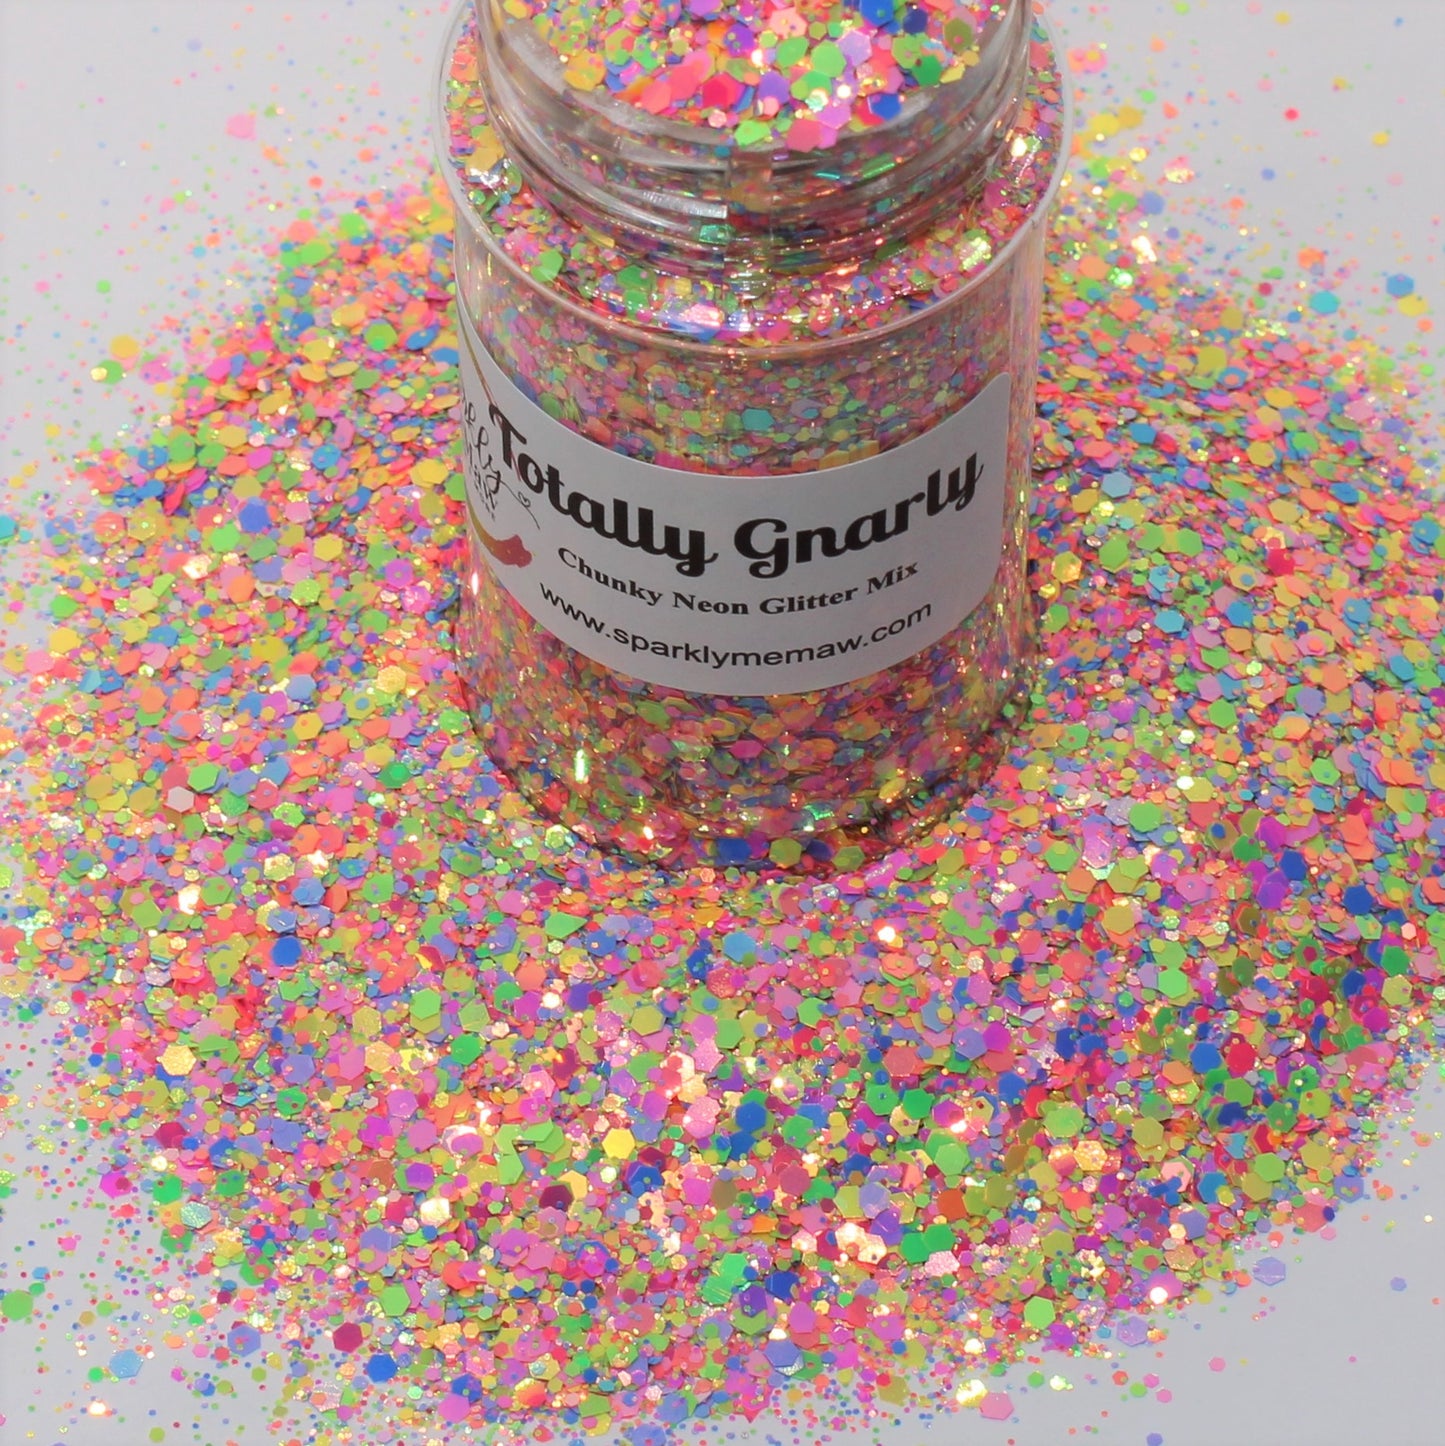 FireFly Chunky Glow in the Dark Glitter Mix – Sparkly MeMaw LLC